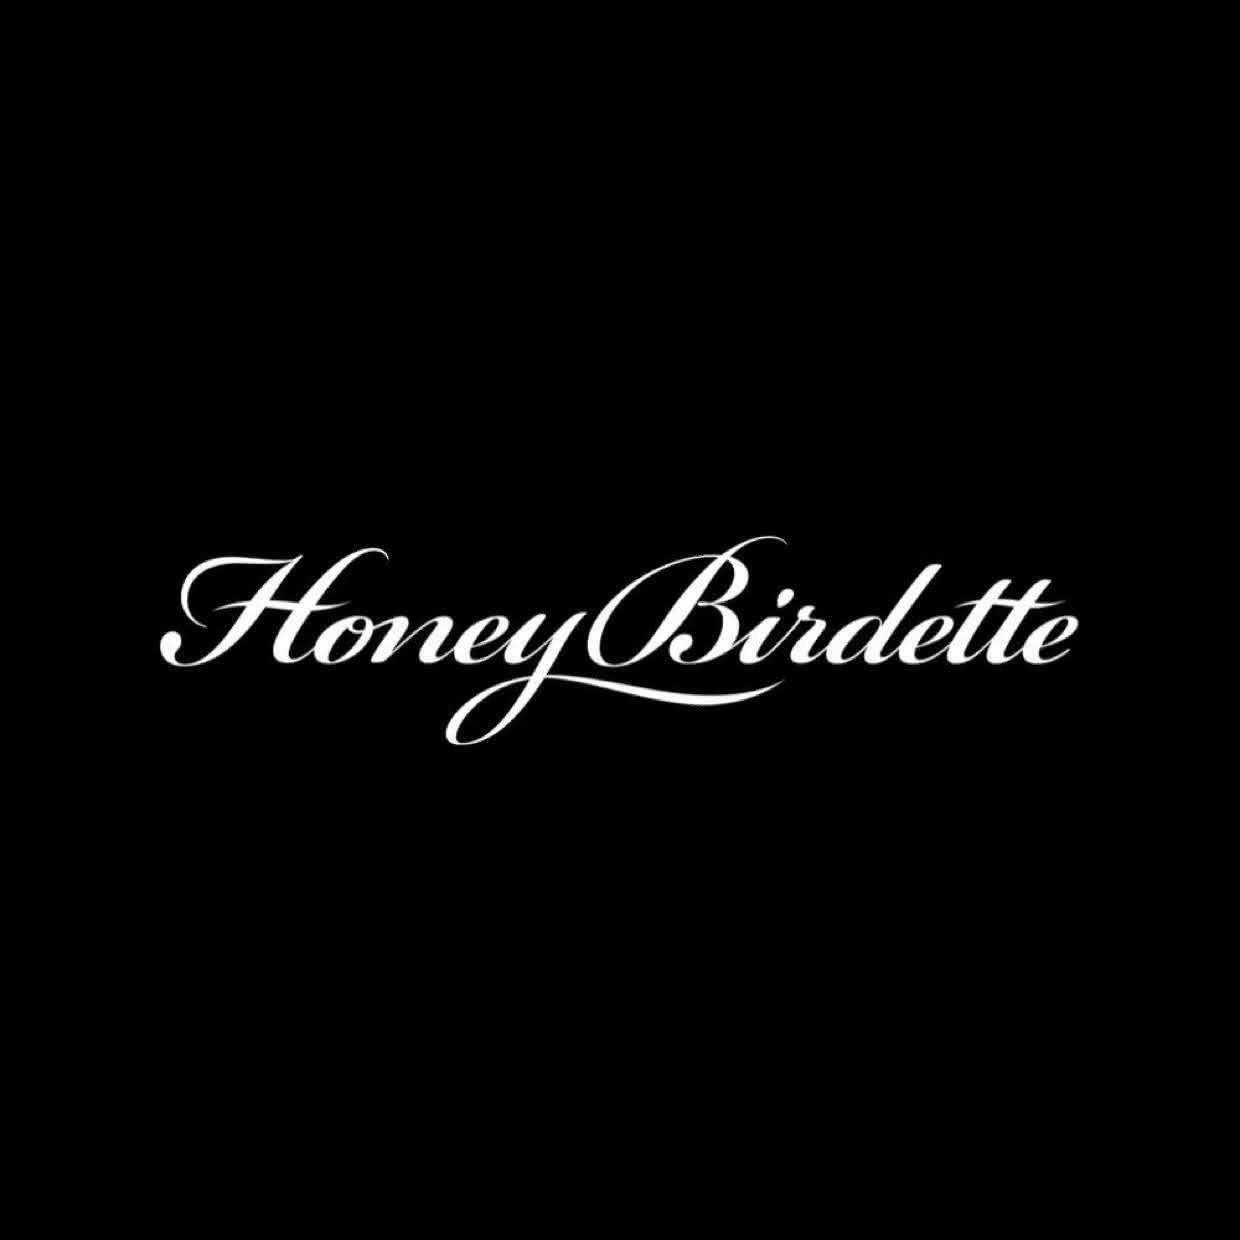 Sexpo | Profile picture of Honey Birdette